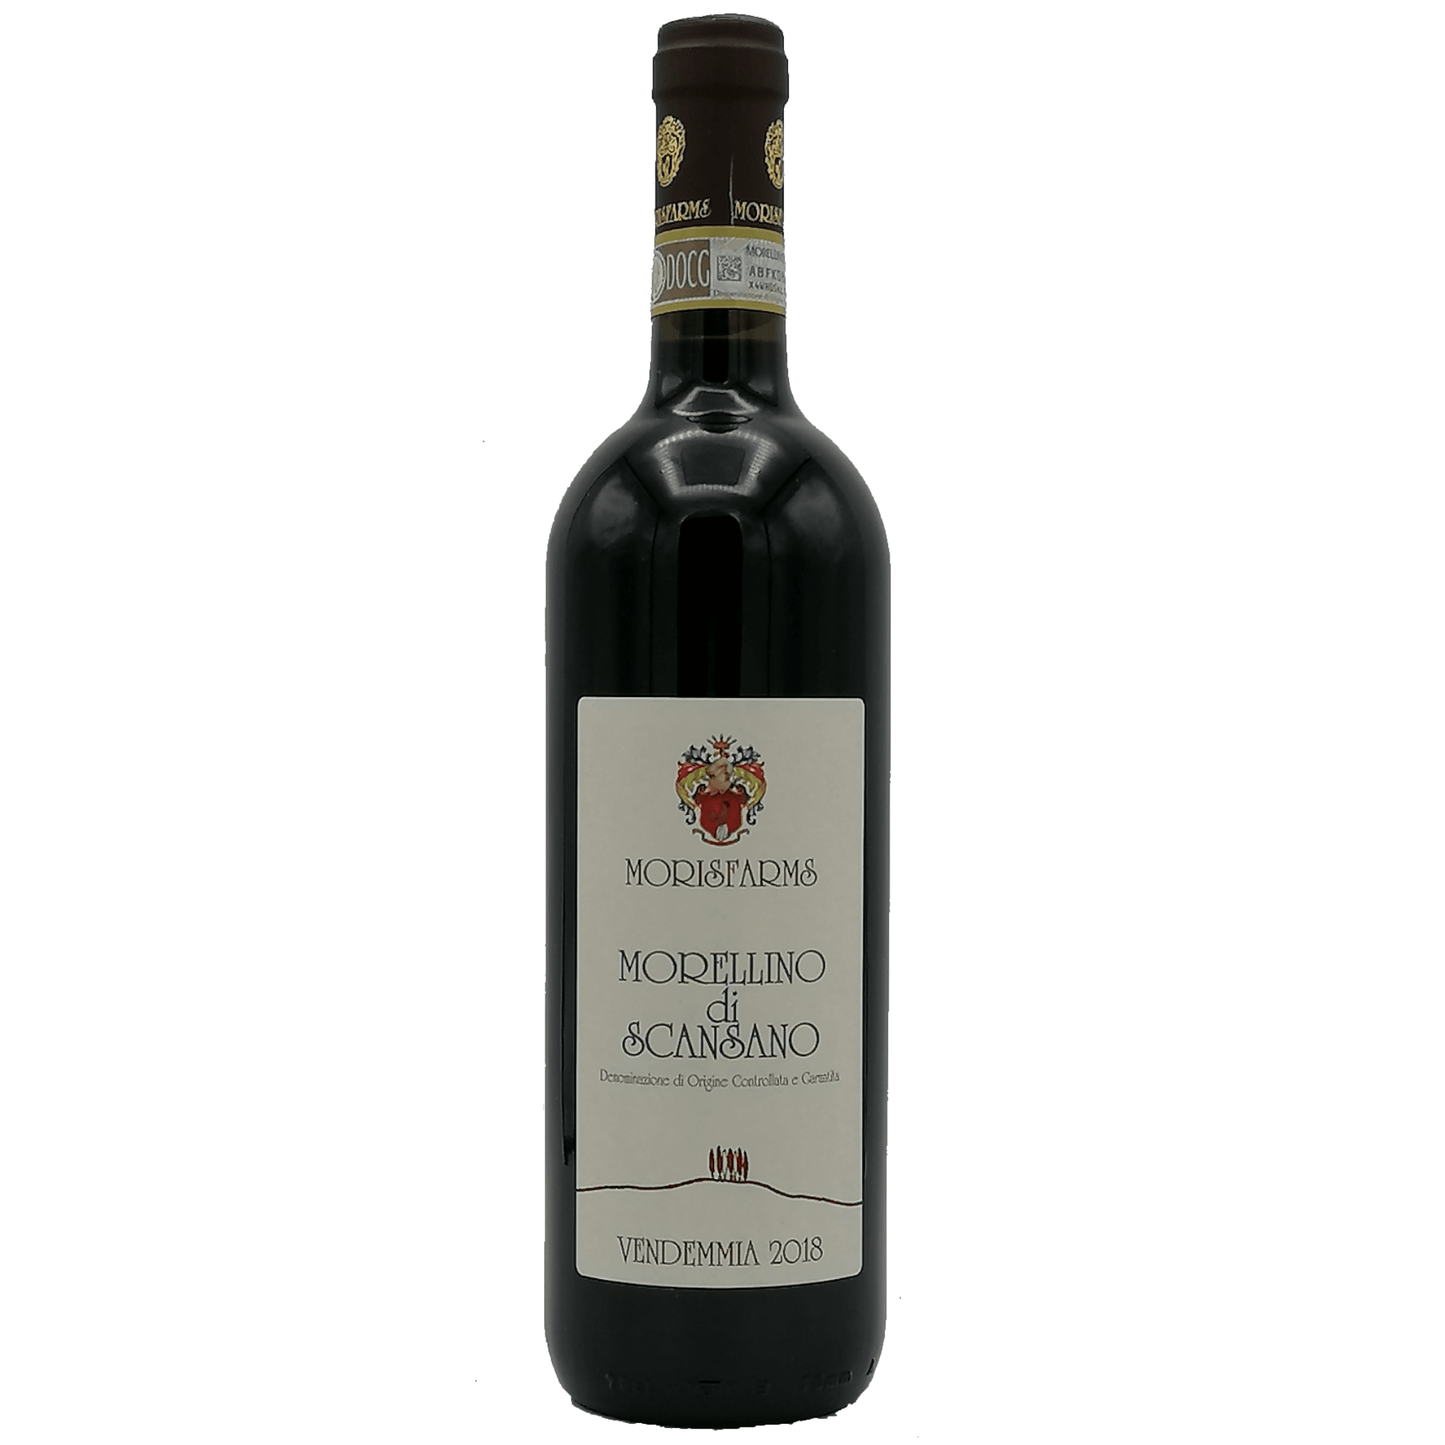 Bottiglia di Morellino di Scansano DOCG Classico da 0,75 l Morisfarms.